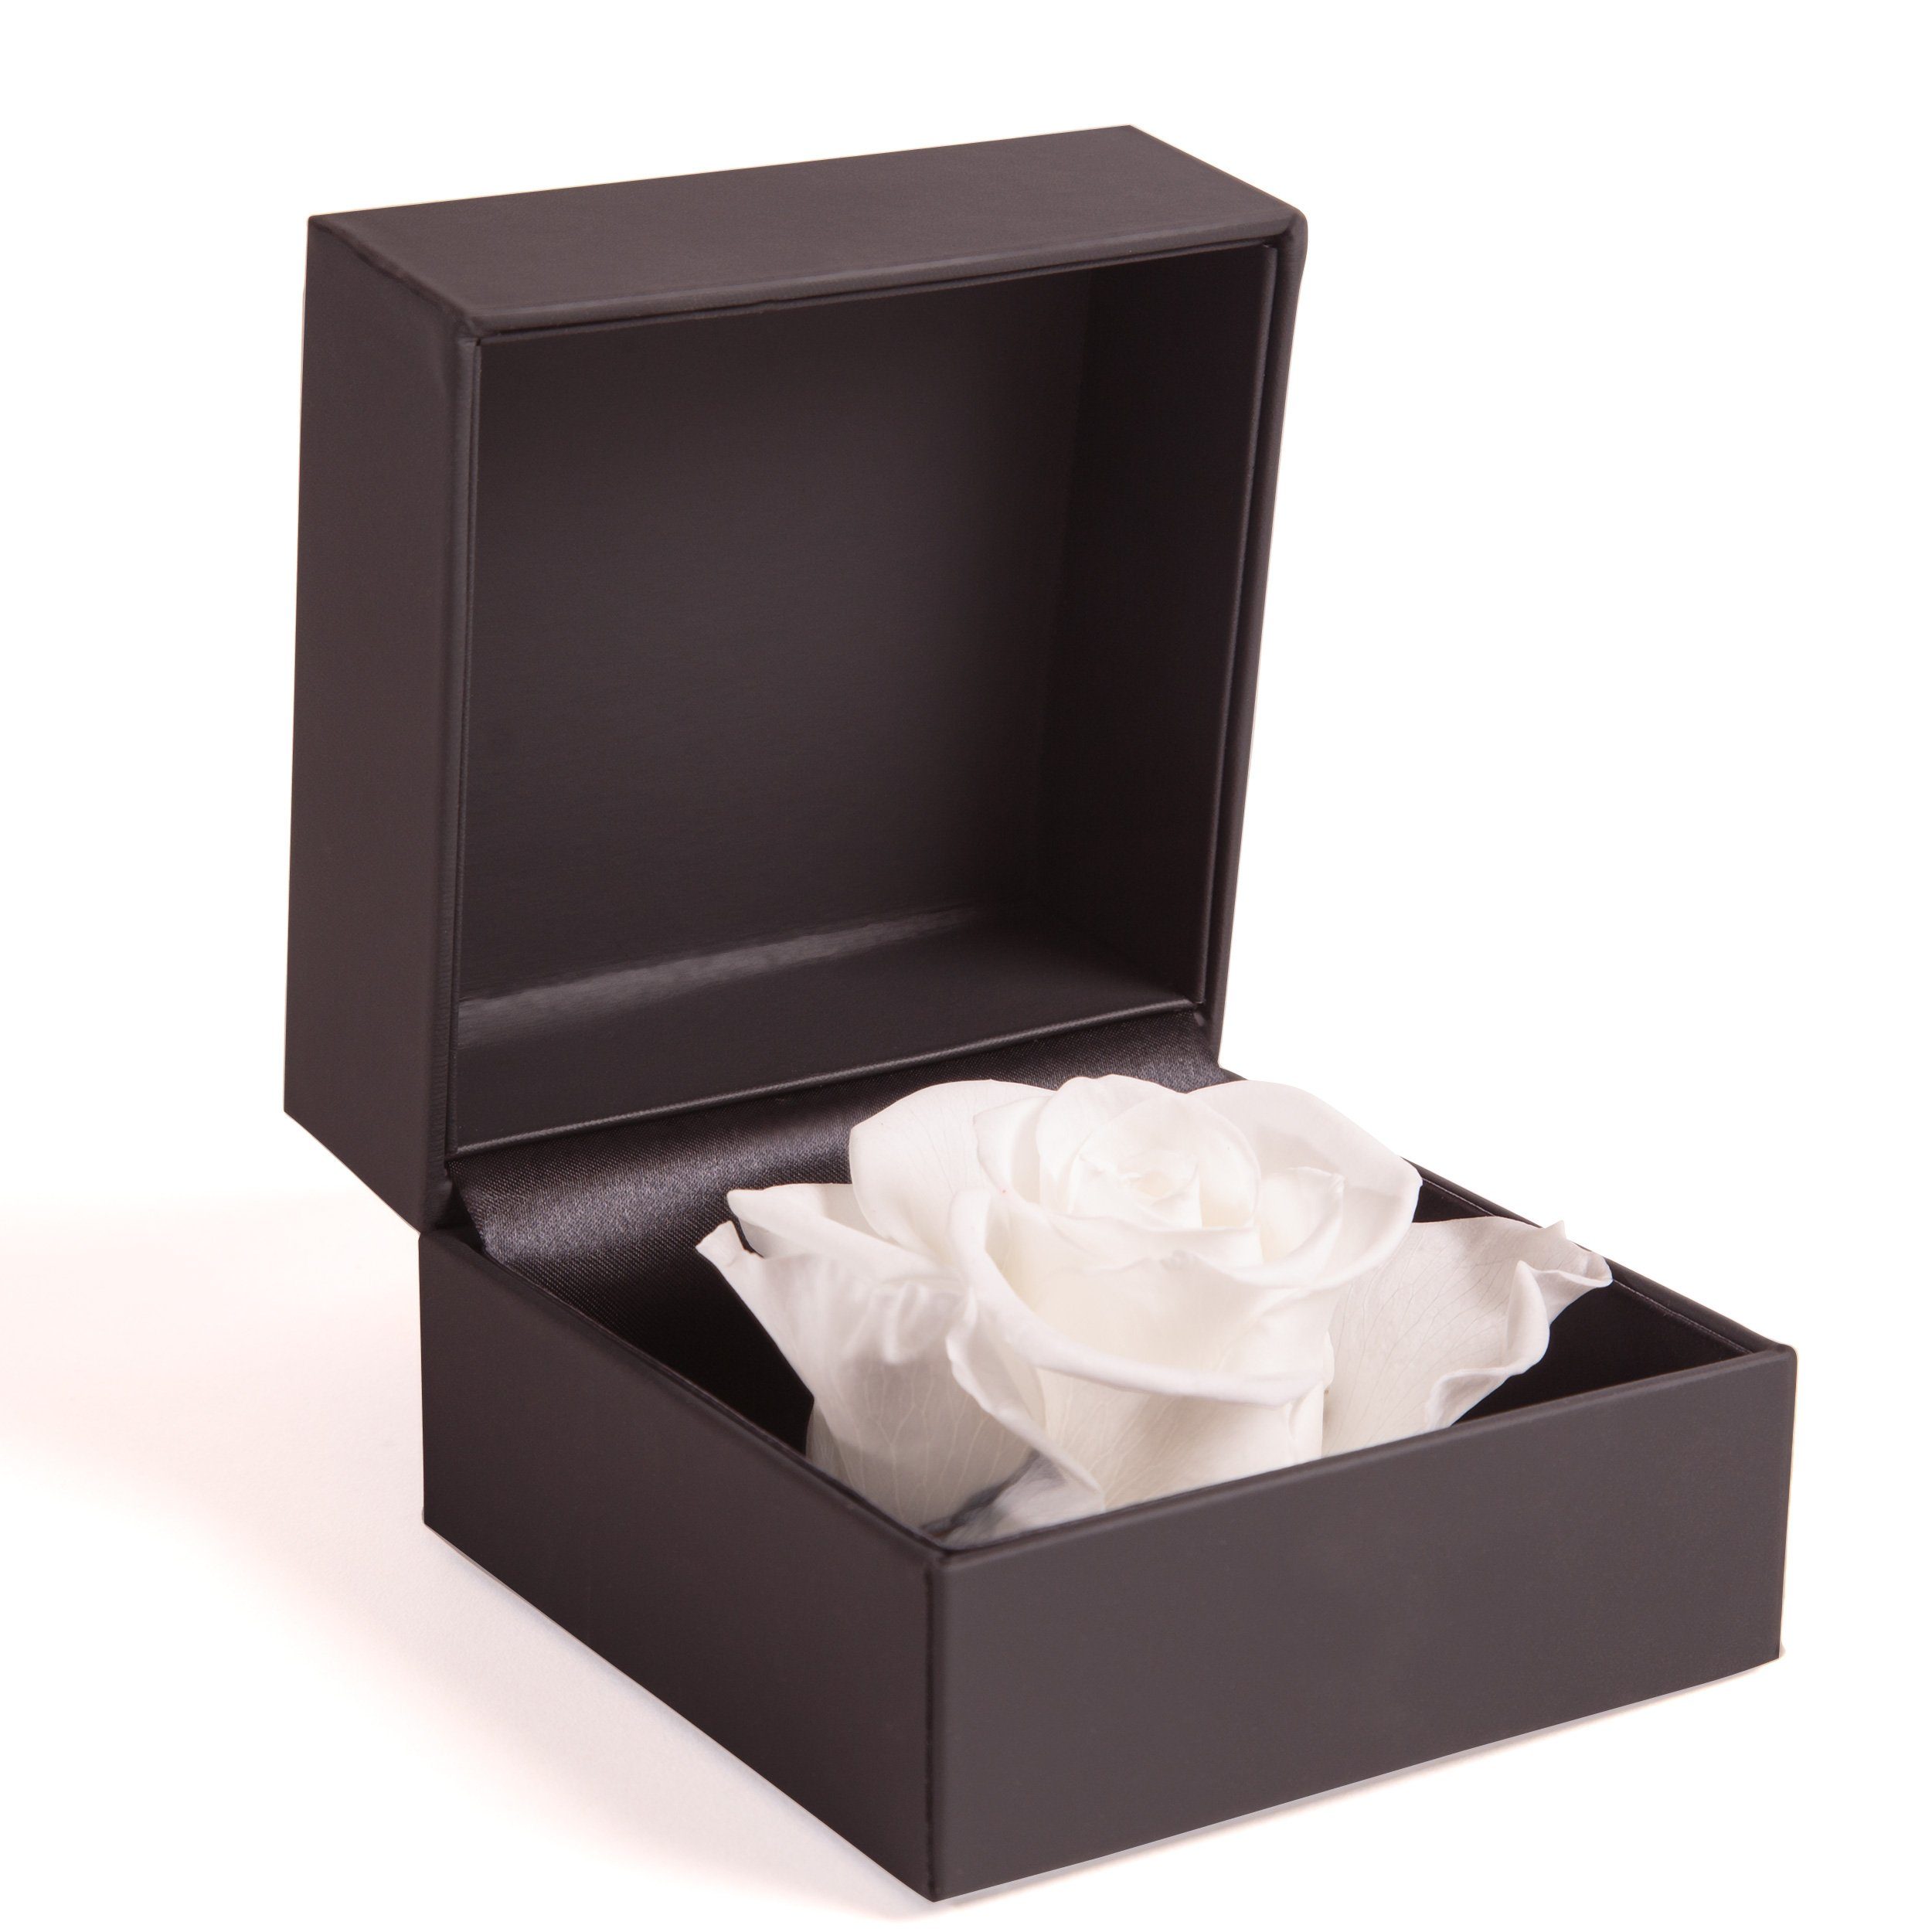 Infinity Rosenbox rund ewige Rose konserviert Blumenbox Geschenk Blume Etui Dose 